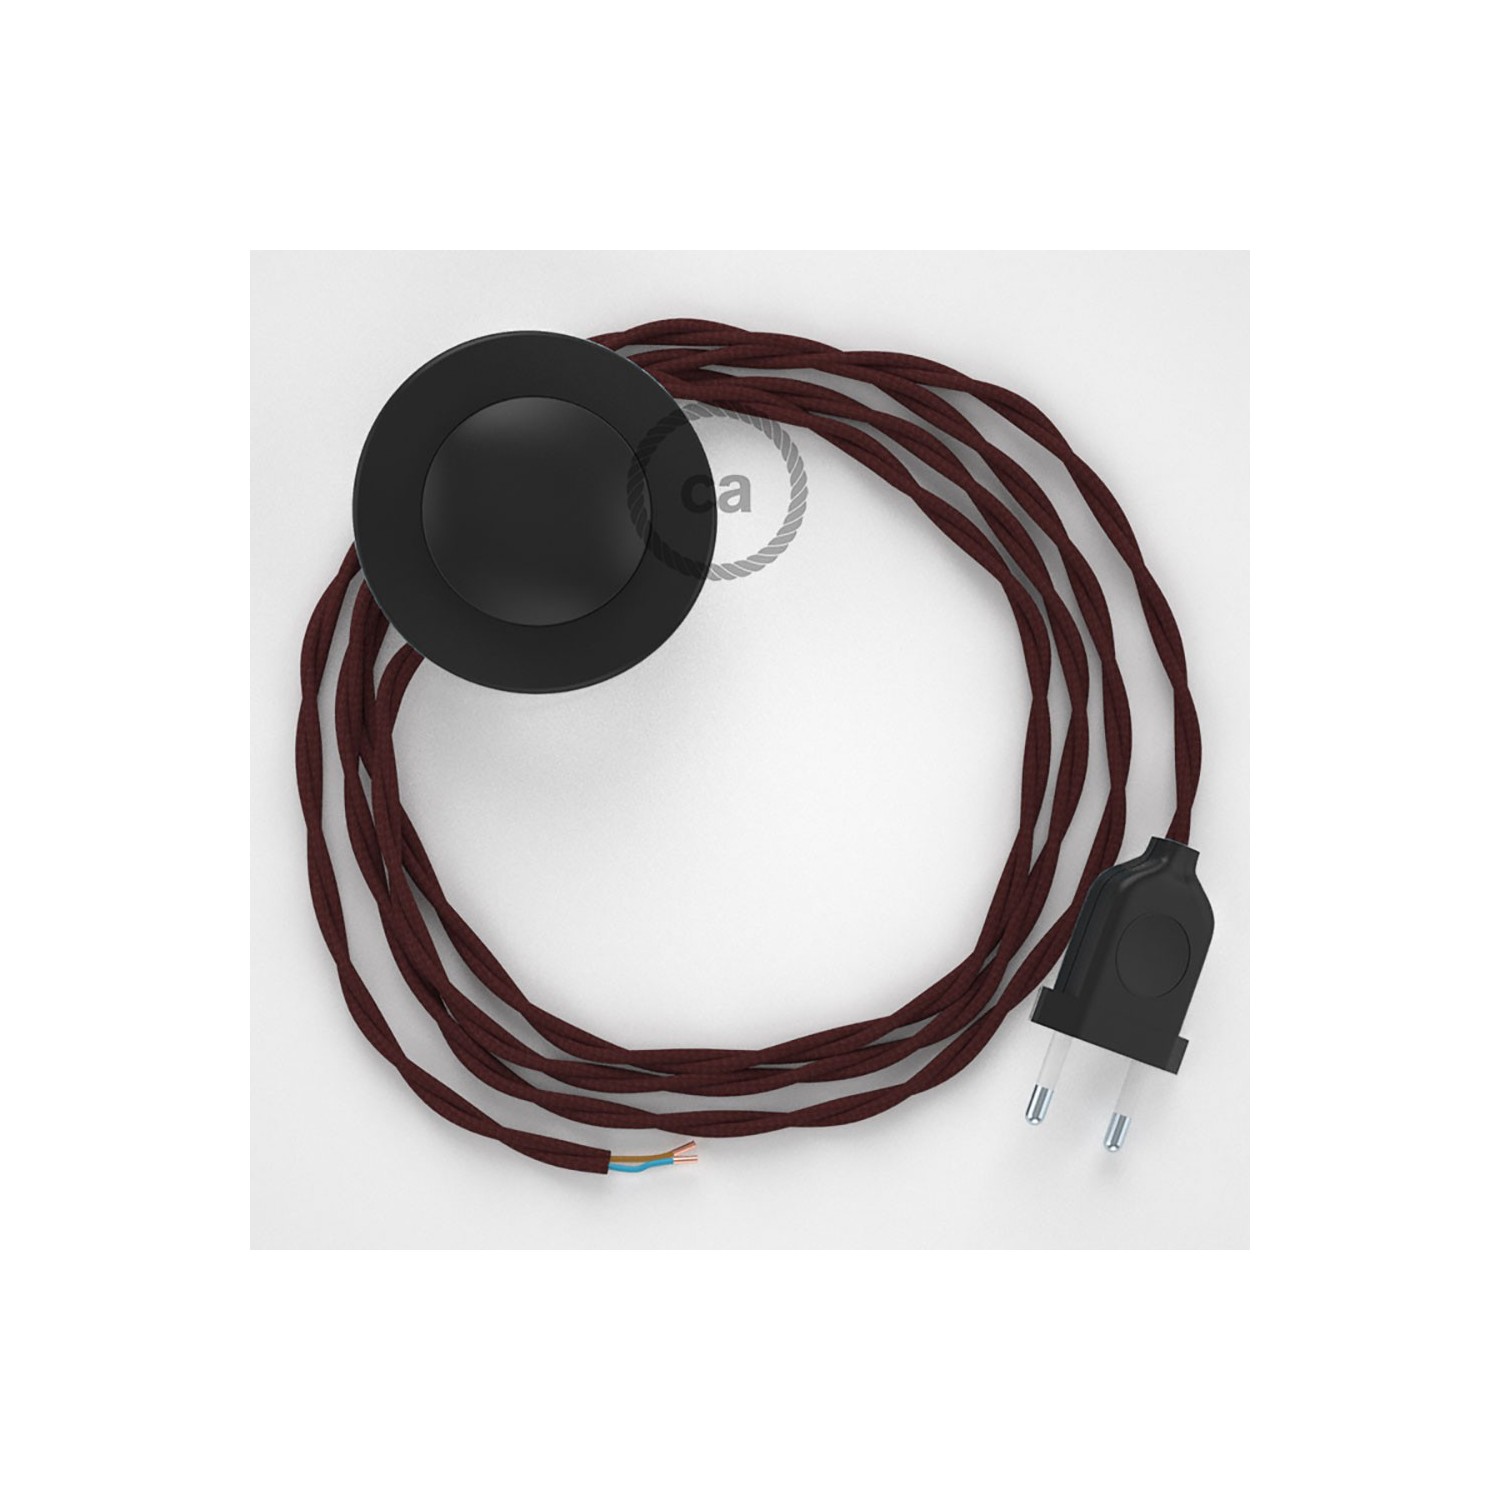 Cordon pour lampadaire, câble TM19 Effet Soie Bordeaux 3 m. Choisissez la couleur de la fiche et de l'interrupteur!